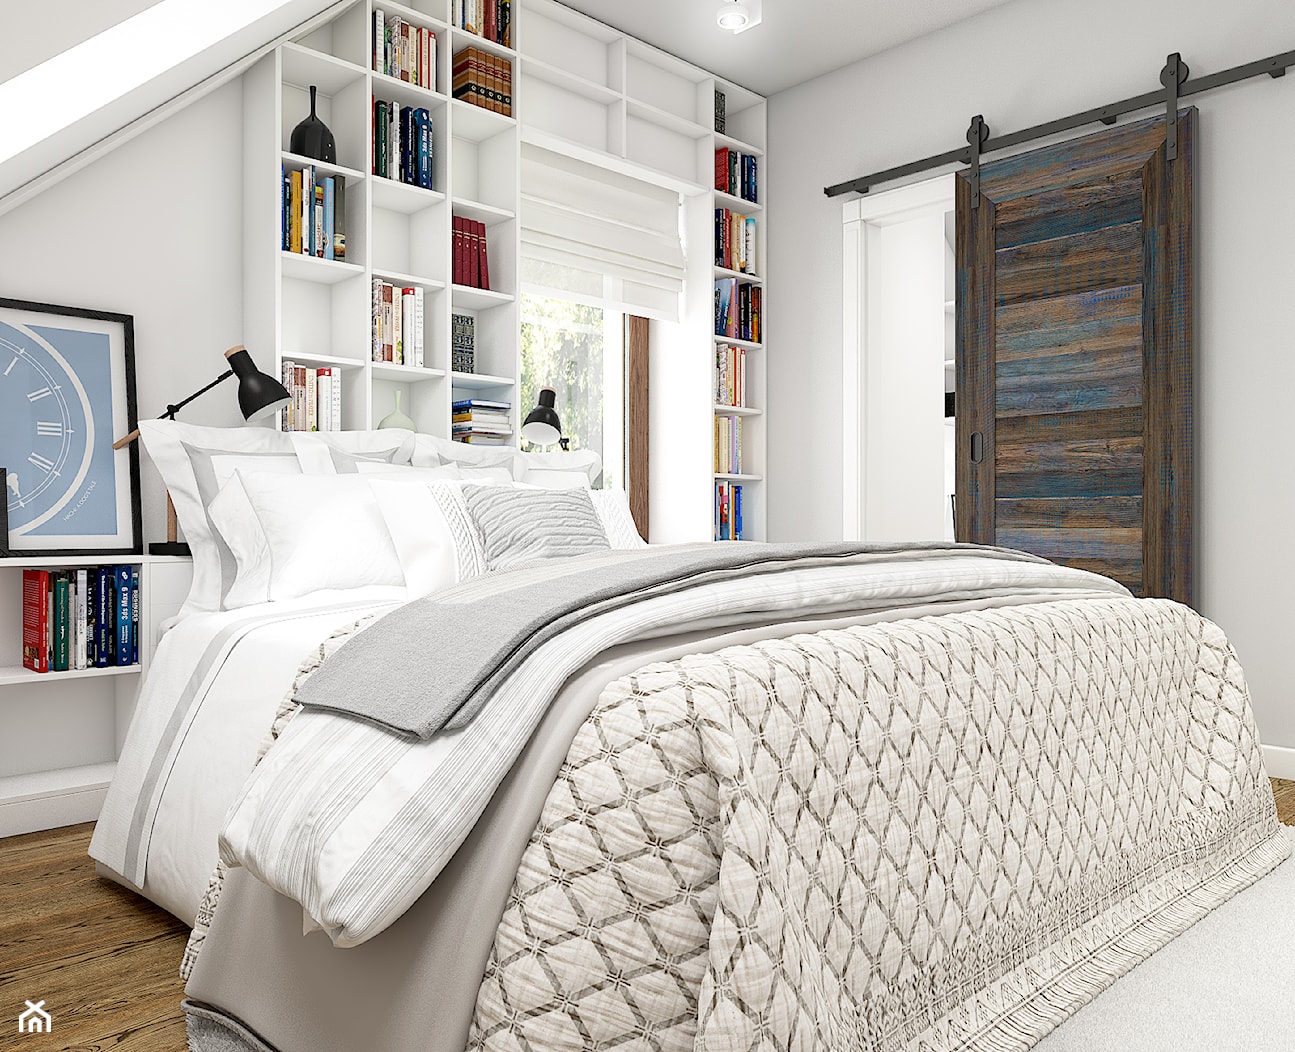 Z indygo - Mała biała sypialnia na poddaszu - zdjęcie od WERDHOME - Homebook